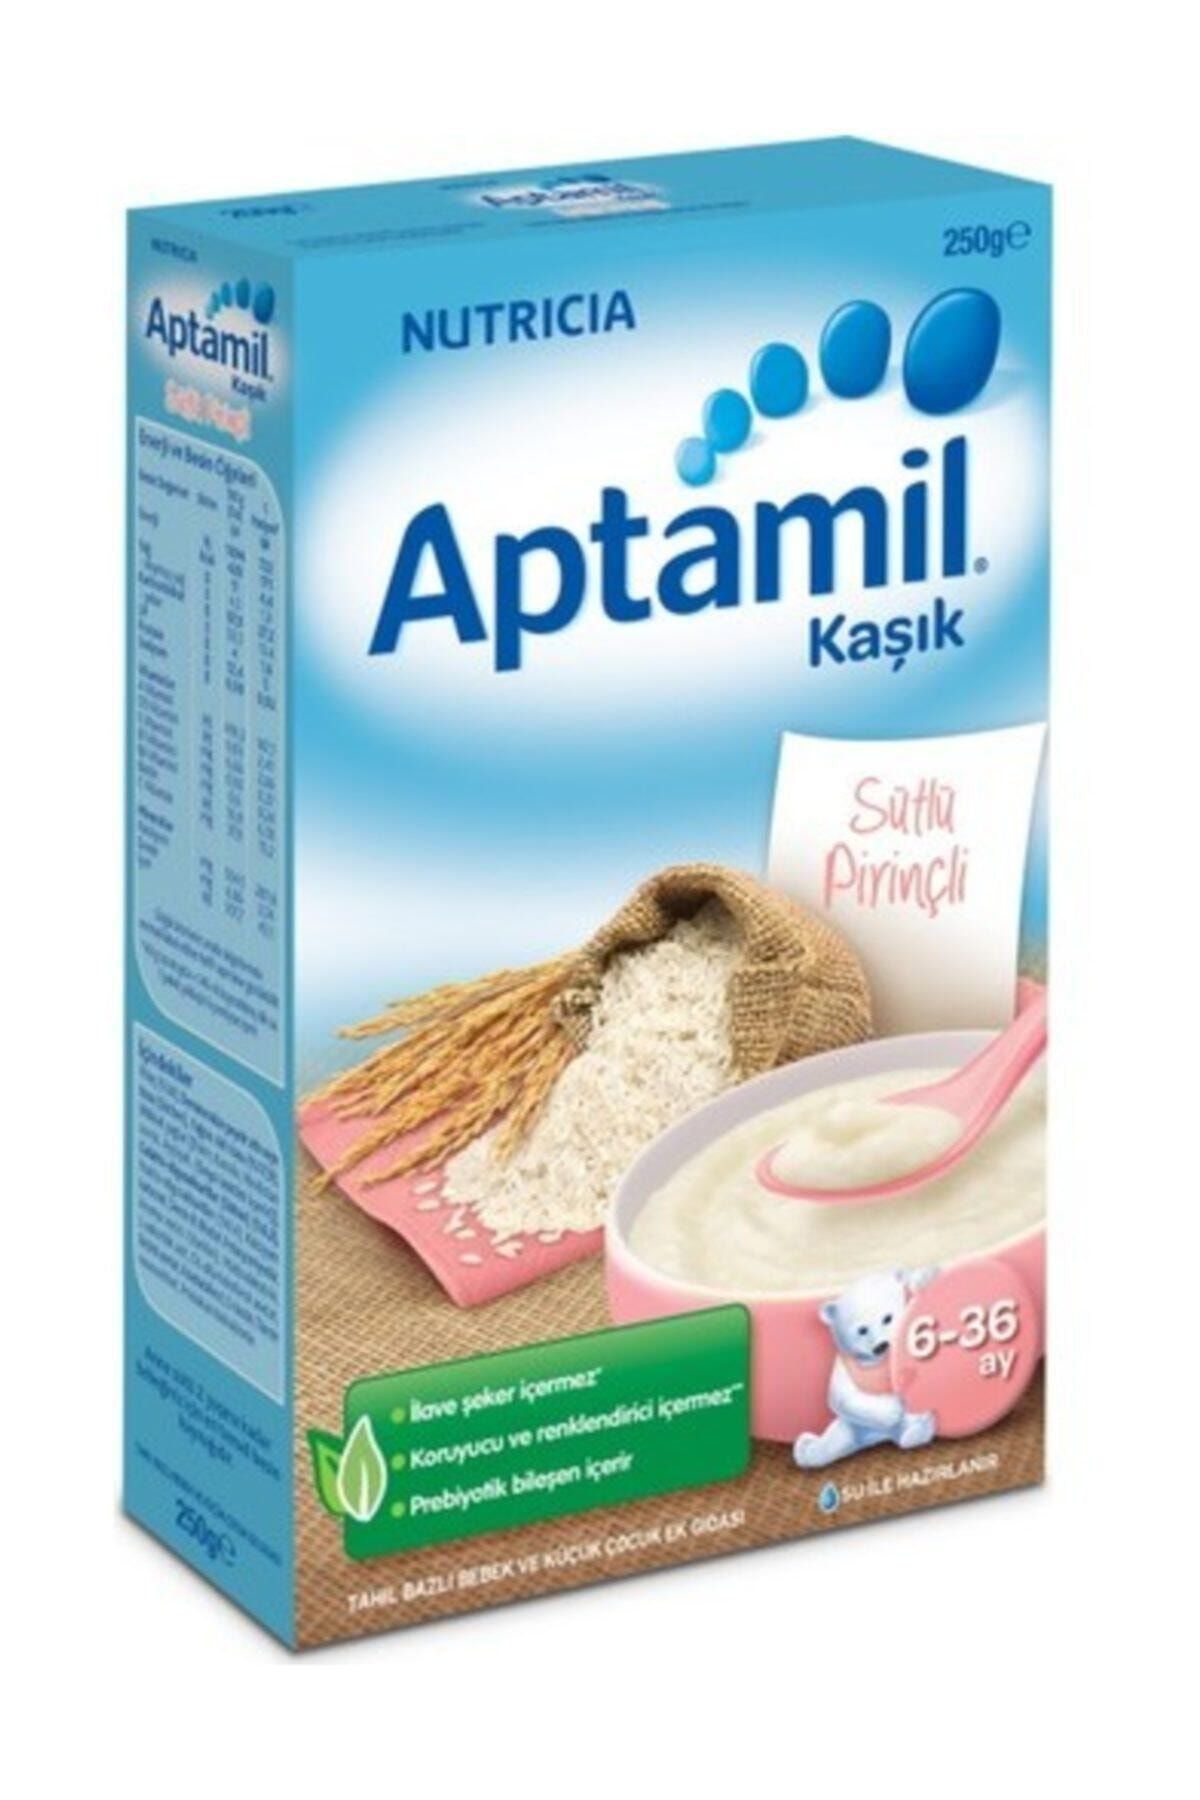 Aptamil Sütlü Pirinçli Kaşık Maması 250 gr